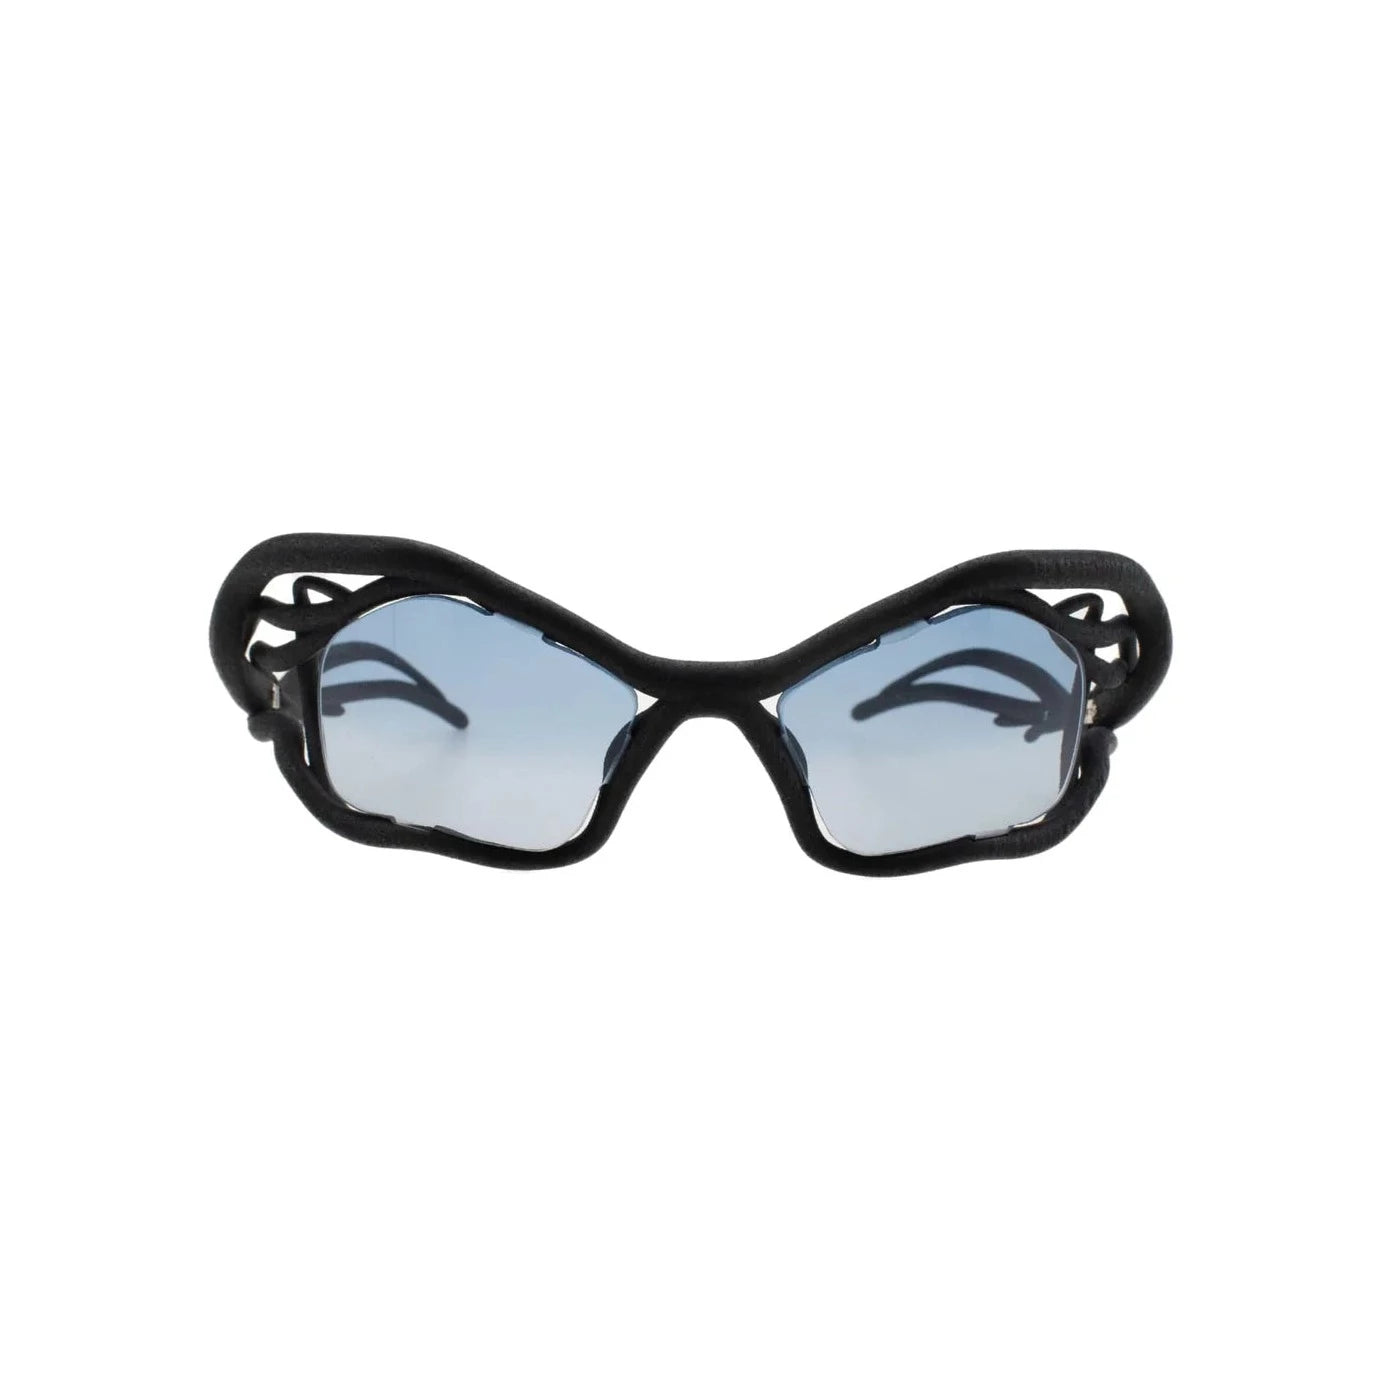 Blue NFT Sunglasses